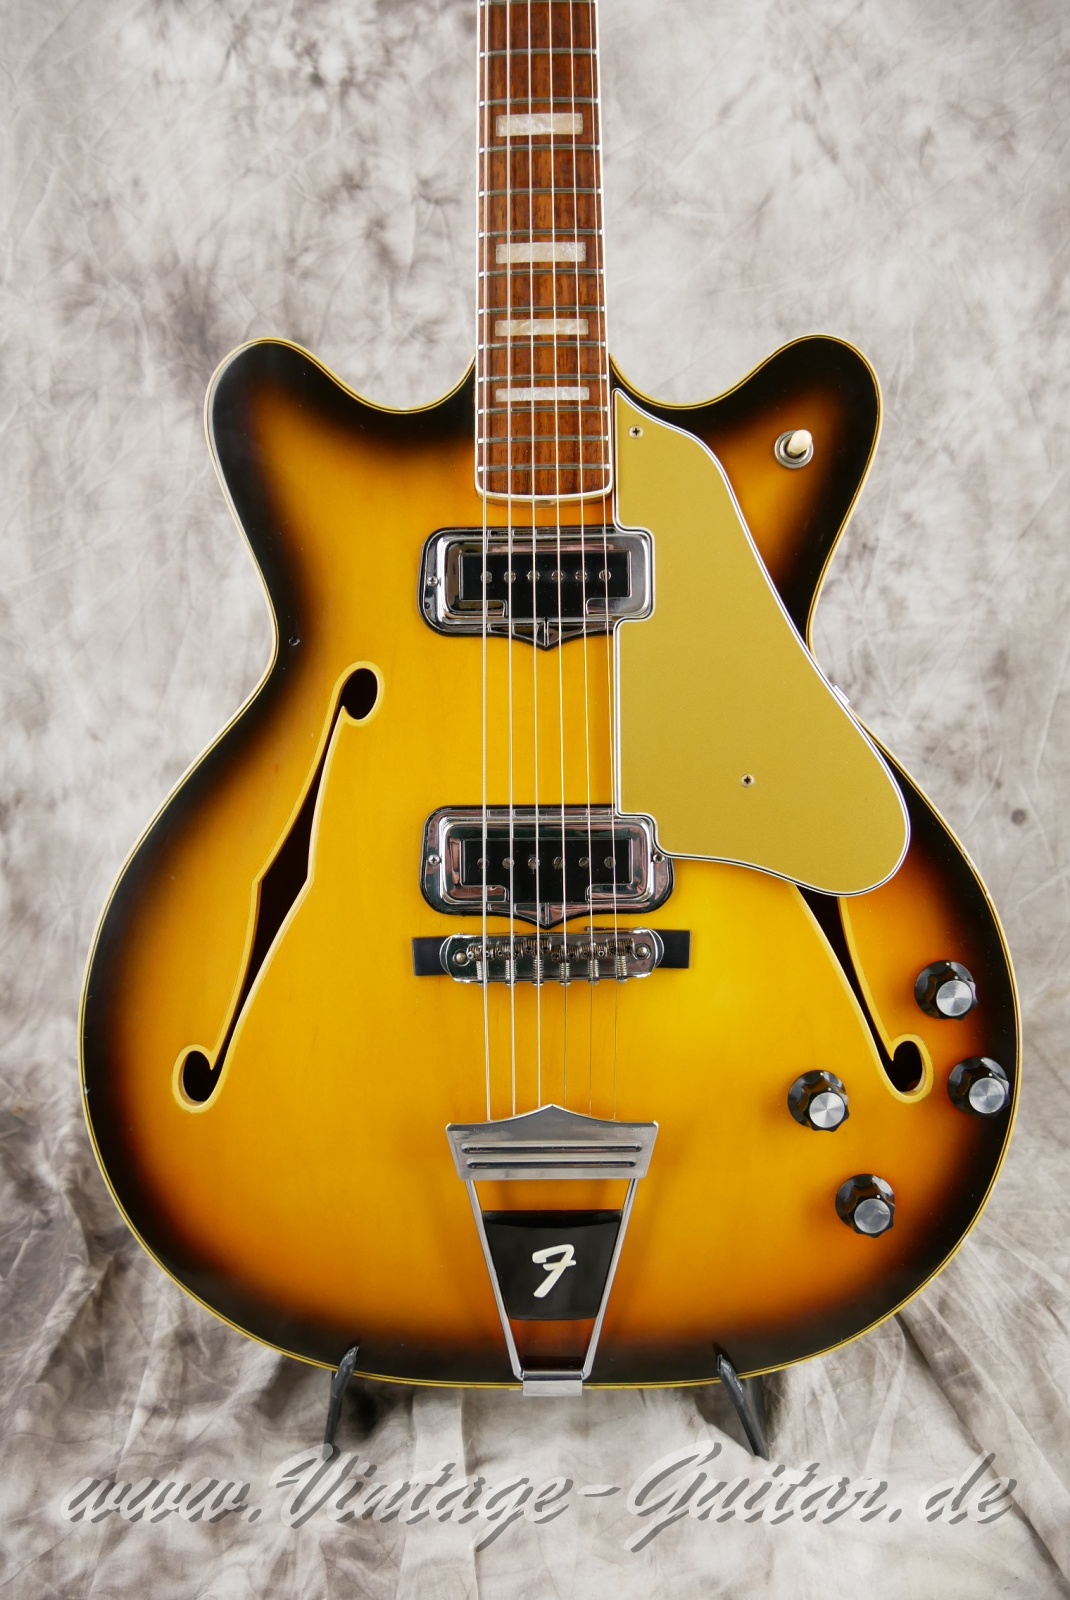 Fender-Coronado-II-1966-USA-sunburst-007.jpg